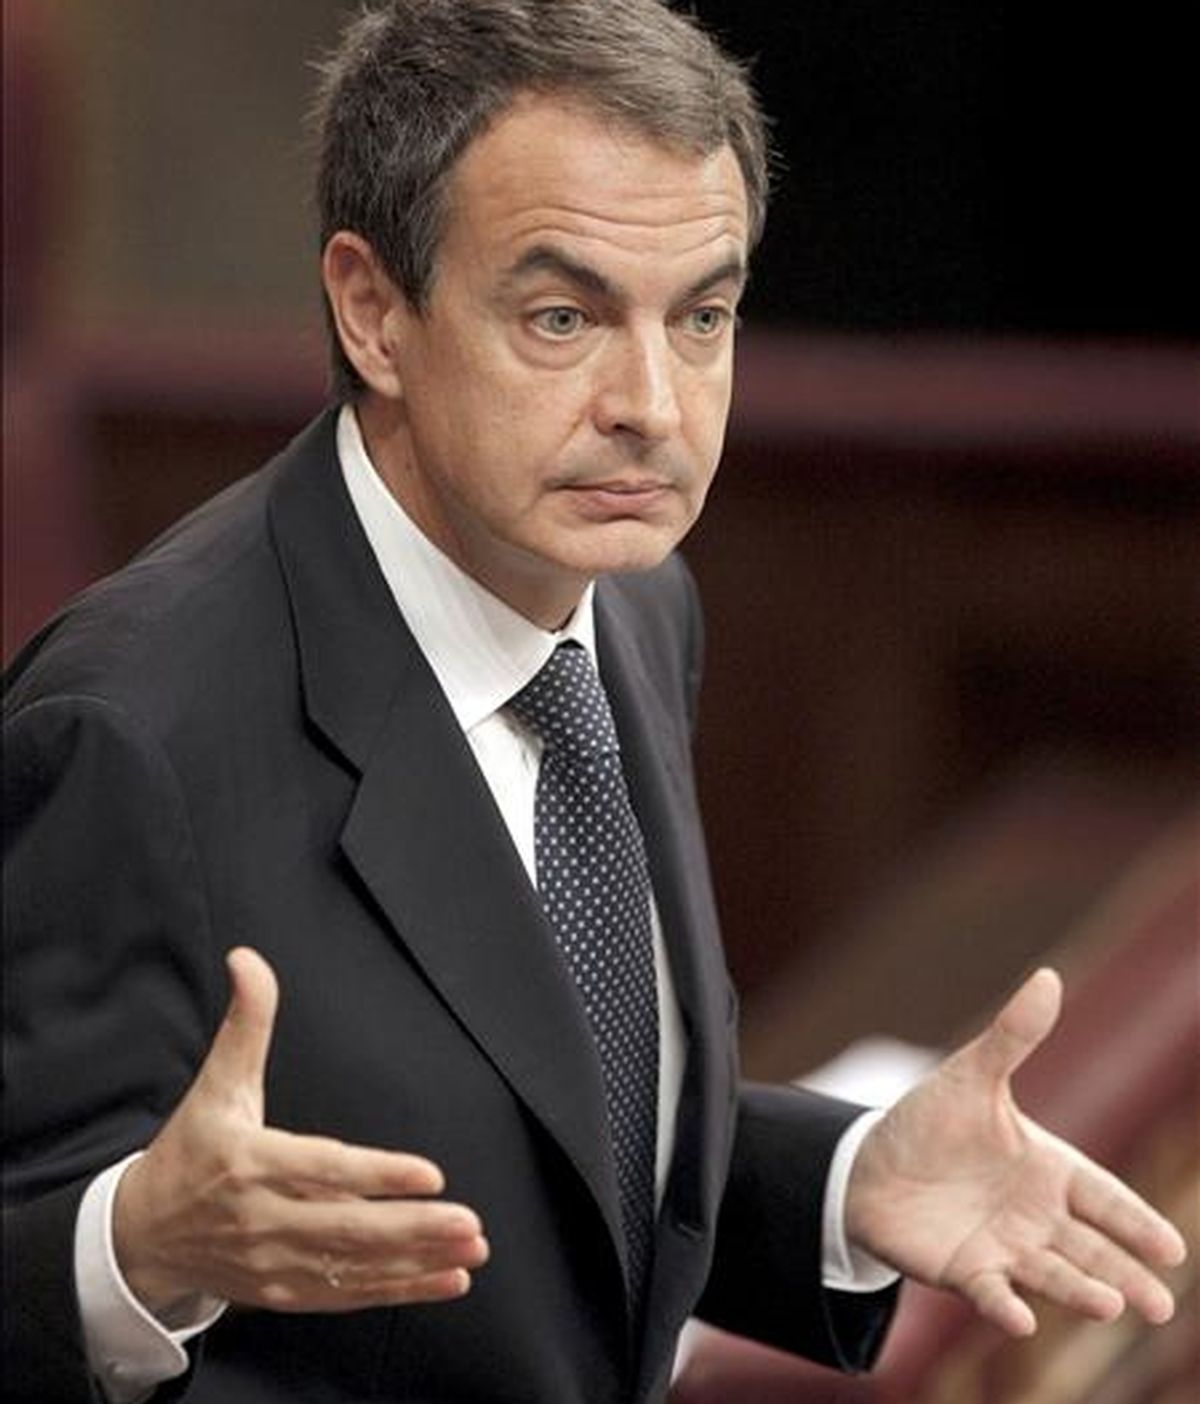 El presidente del Gobierno, José Luis Rodríguez Zapatero, durante una de sus intervenciones en el Congreso de los Diputados, donde ayer presentó la Estrategia para el Crecimiento Económico Sostenible. EFE